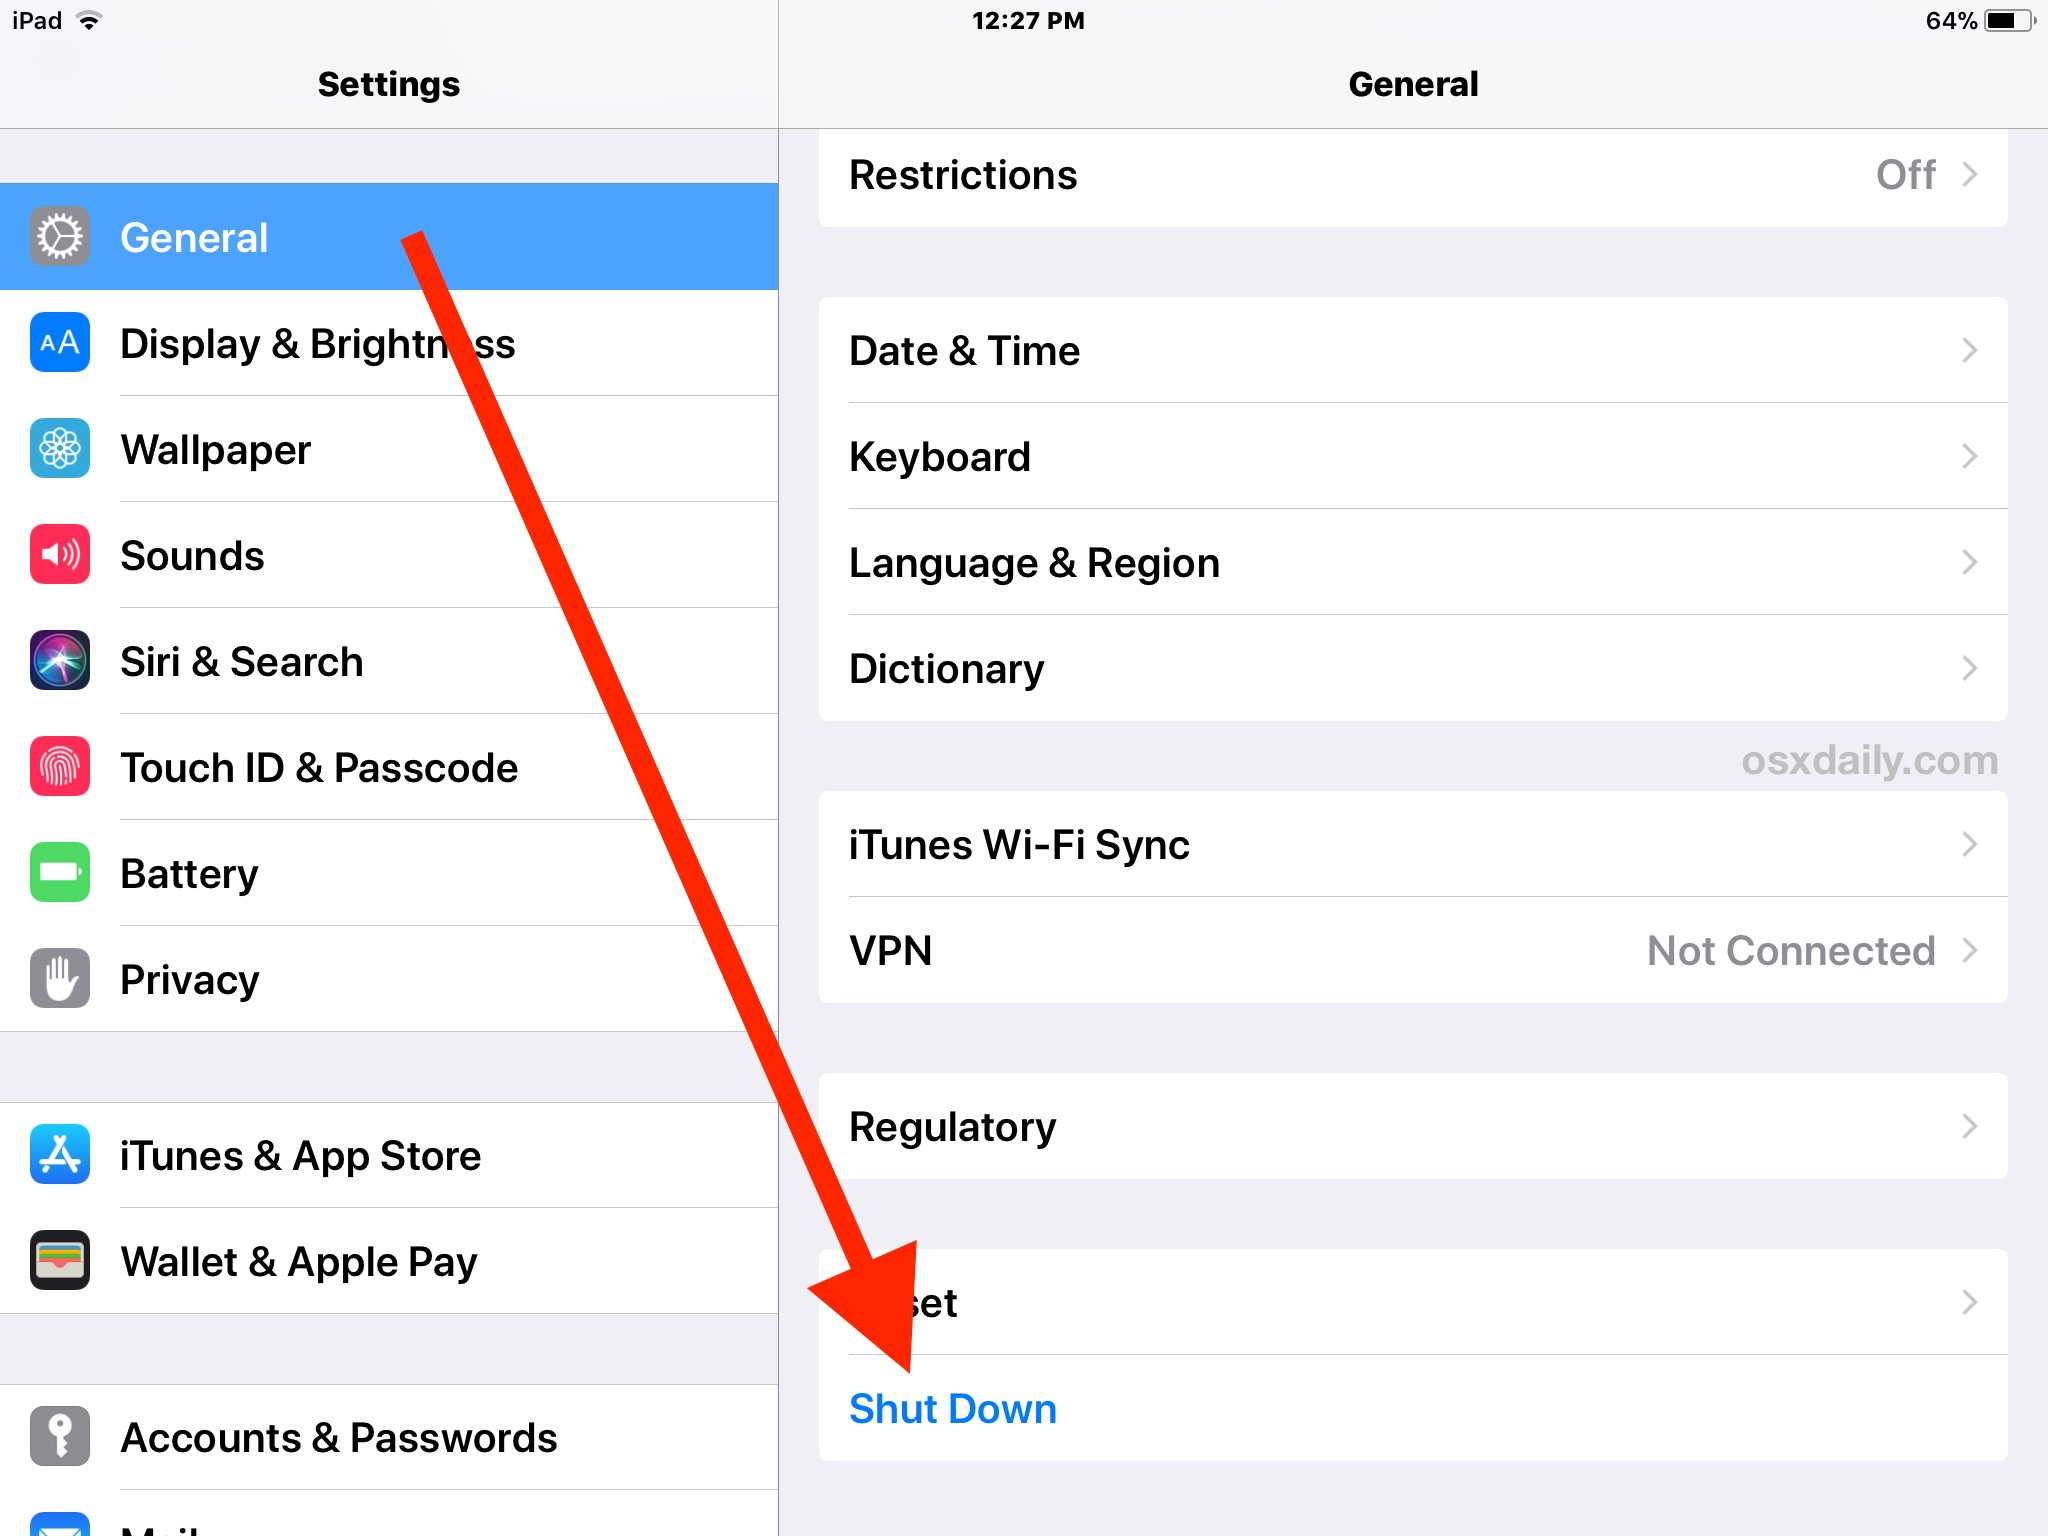 How to Shut Down iPad or iPhone via Settings